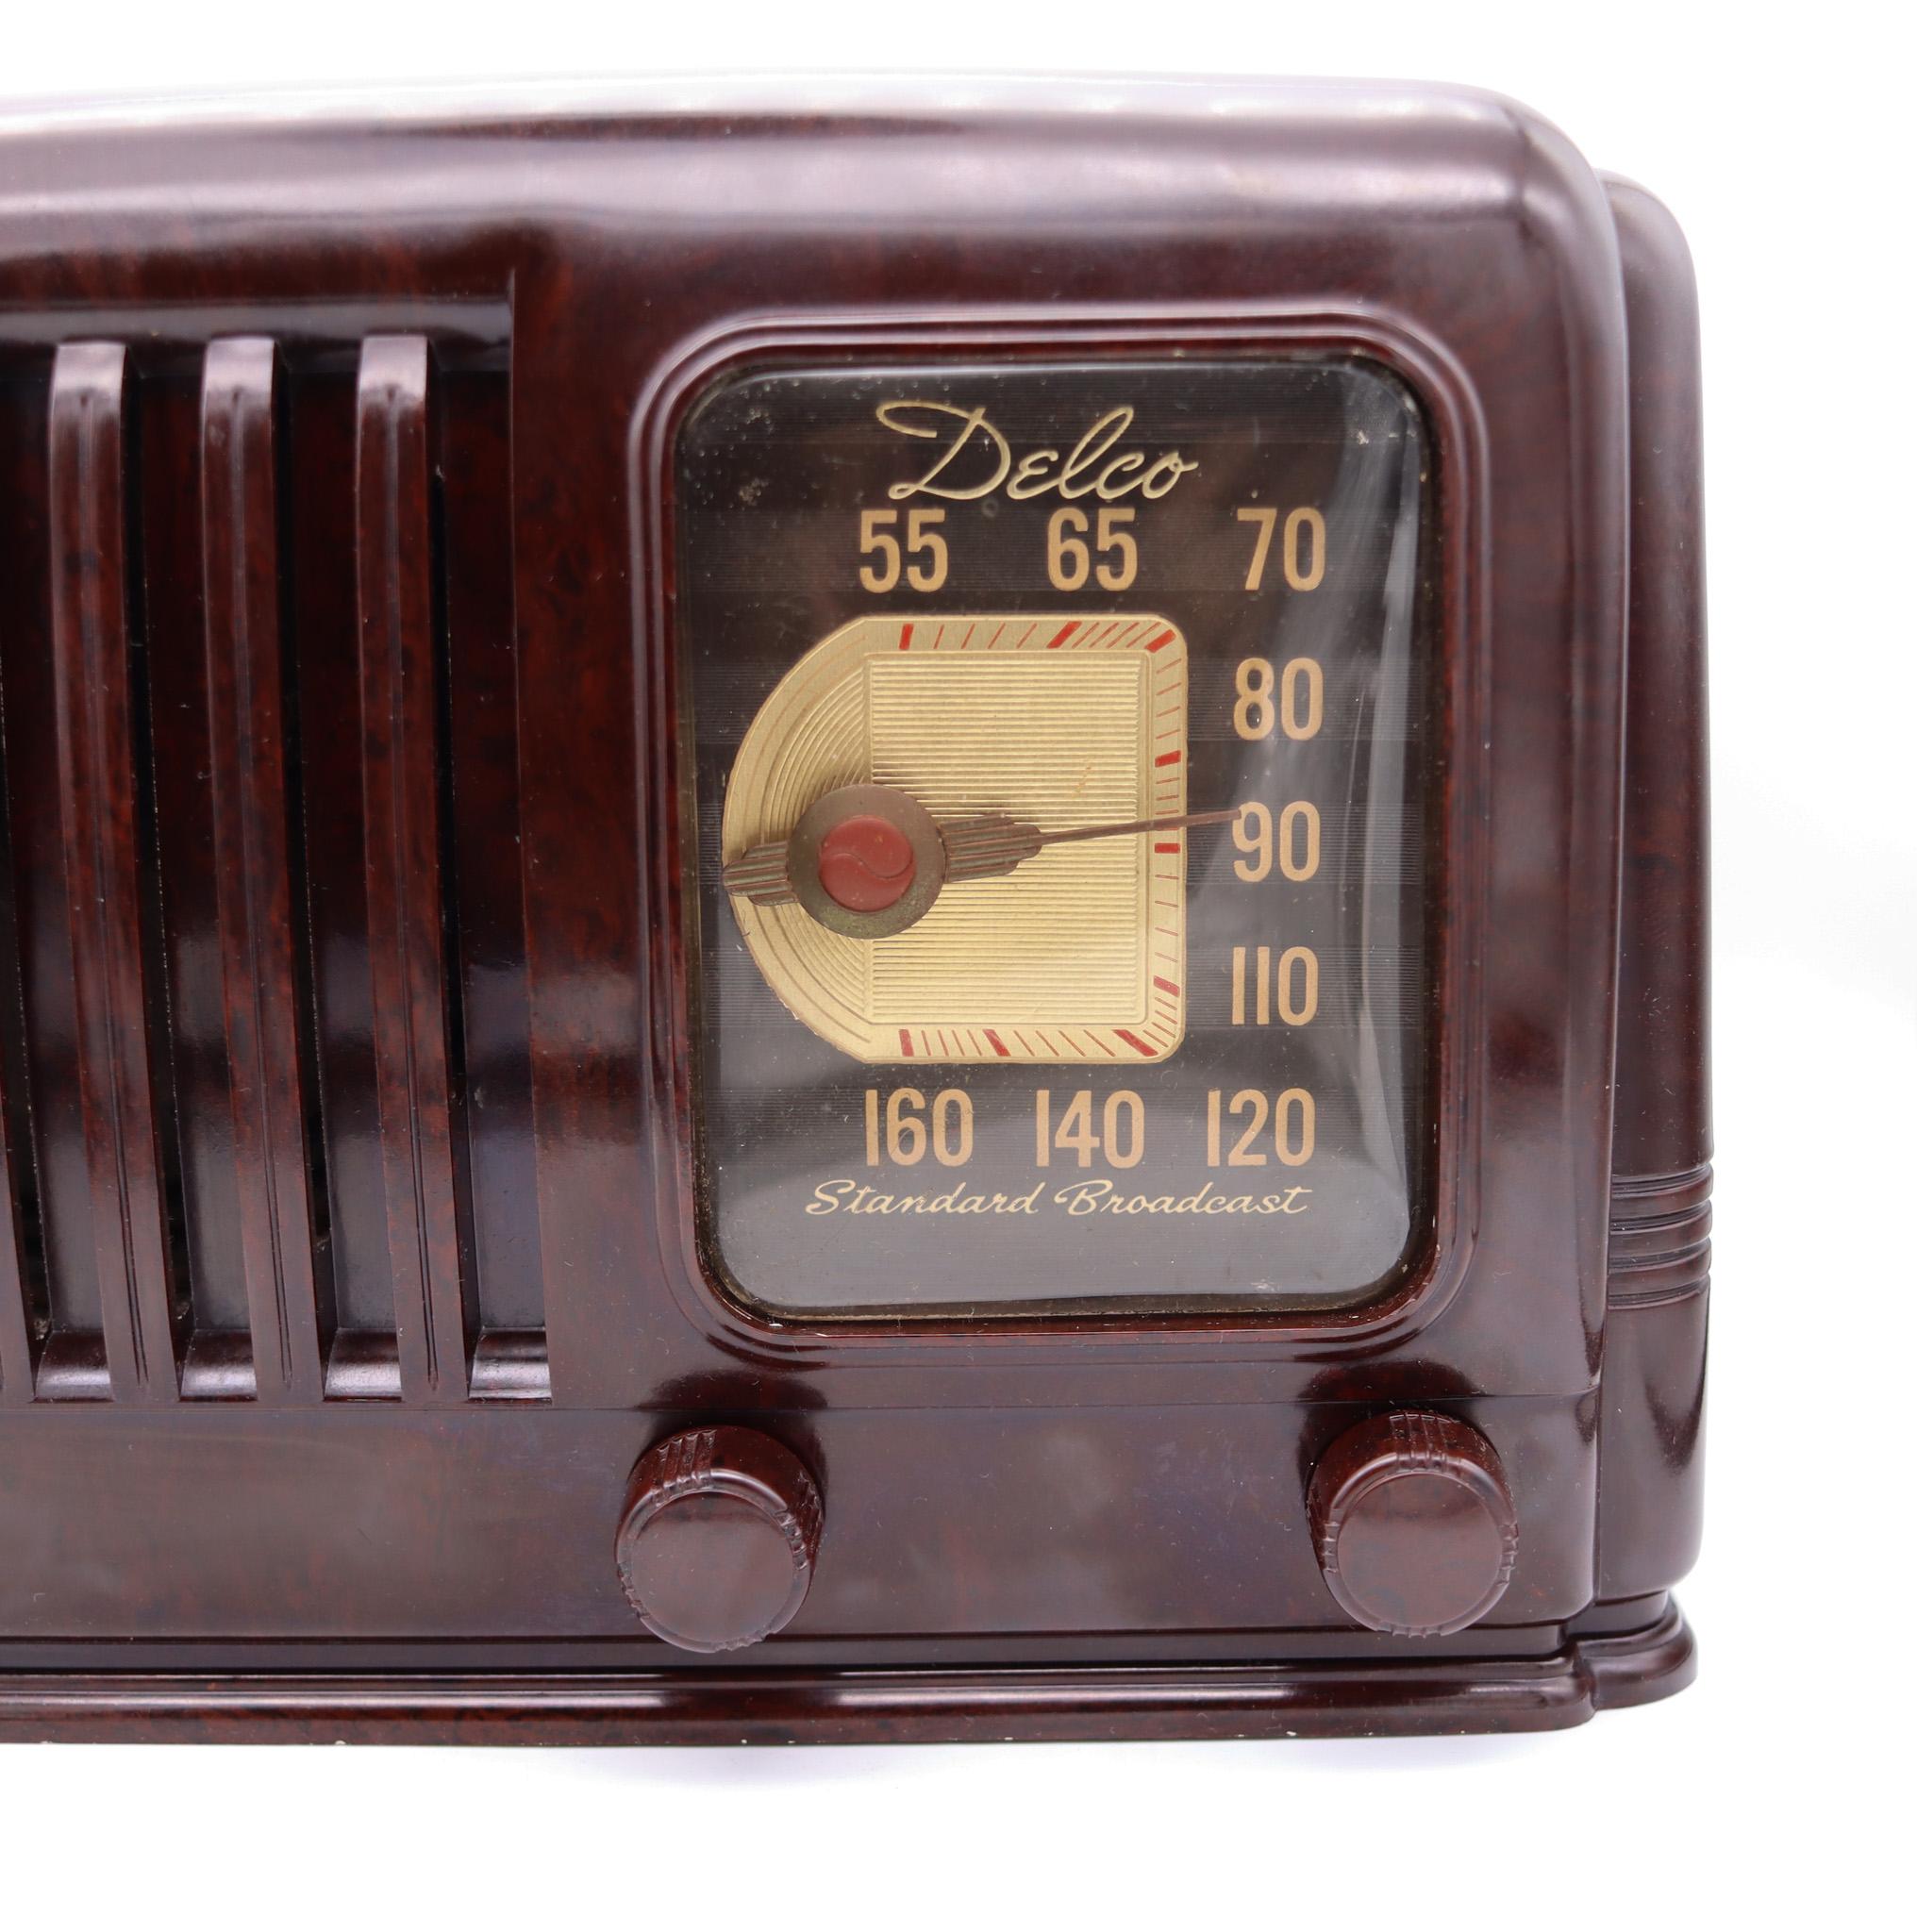 Ein Art-Déco-Röhrenradio, entworfen von Delco.

Hier bieten wir ein absolut beeindruckendes Delco Modell R-1171 Tisch-Röhrenradio von 1941 an. Es verfügt über ein wunderschönes, dunkelbraun marmoriertes Bakelitgehäuse, ein attraktives Ziffernblatt,